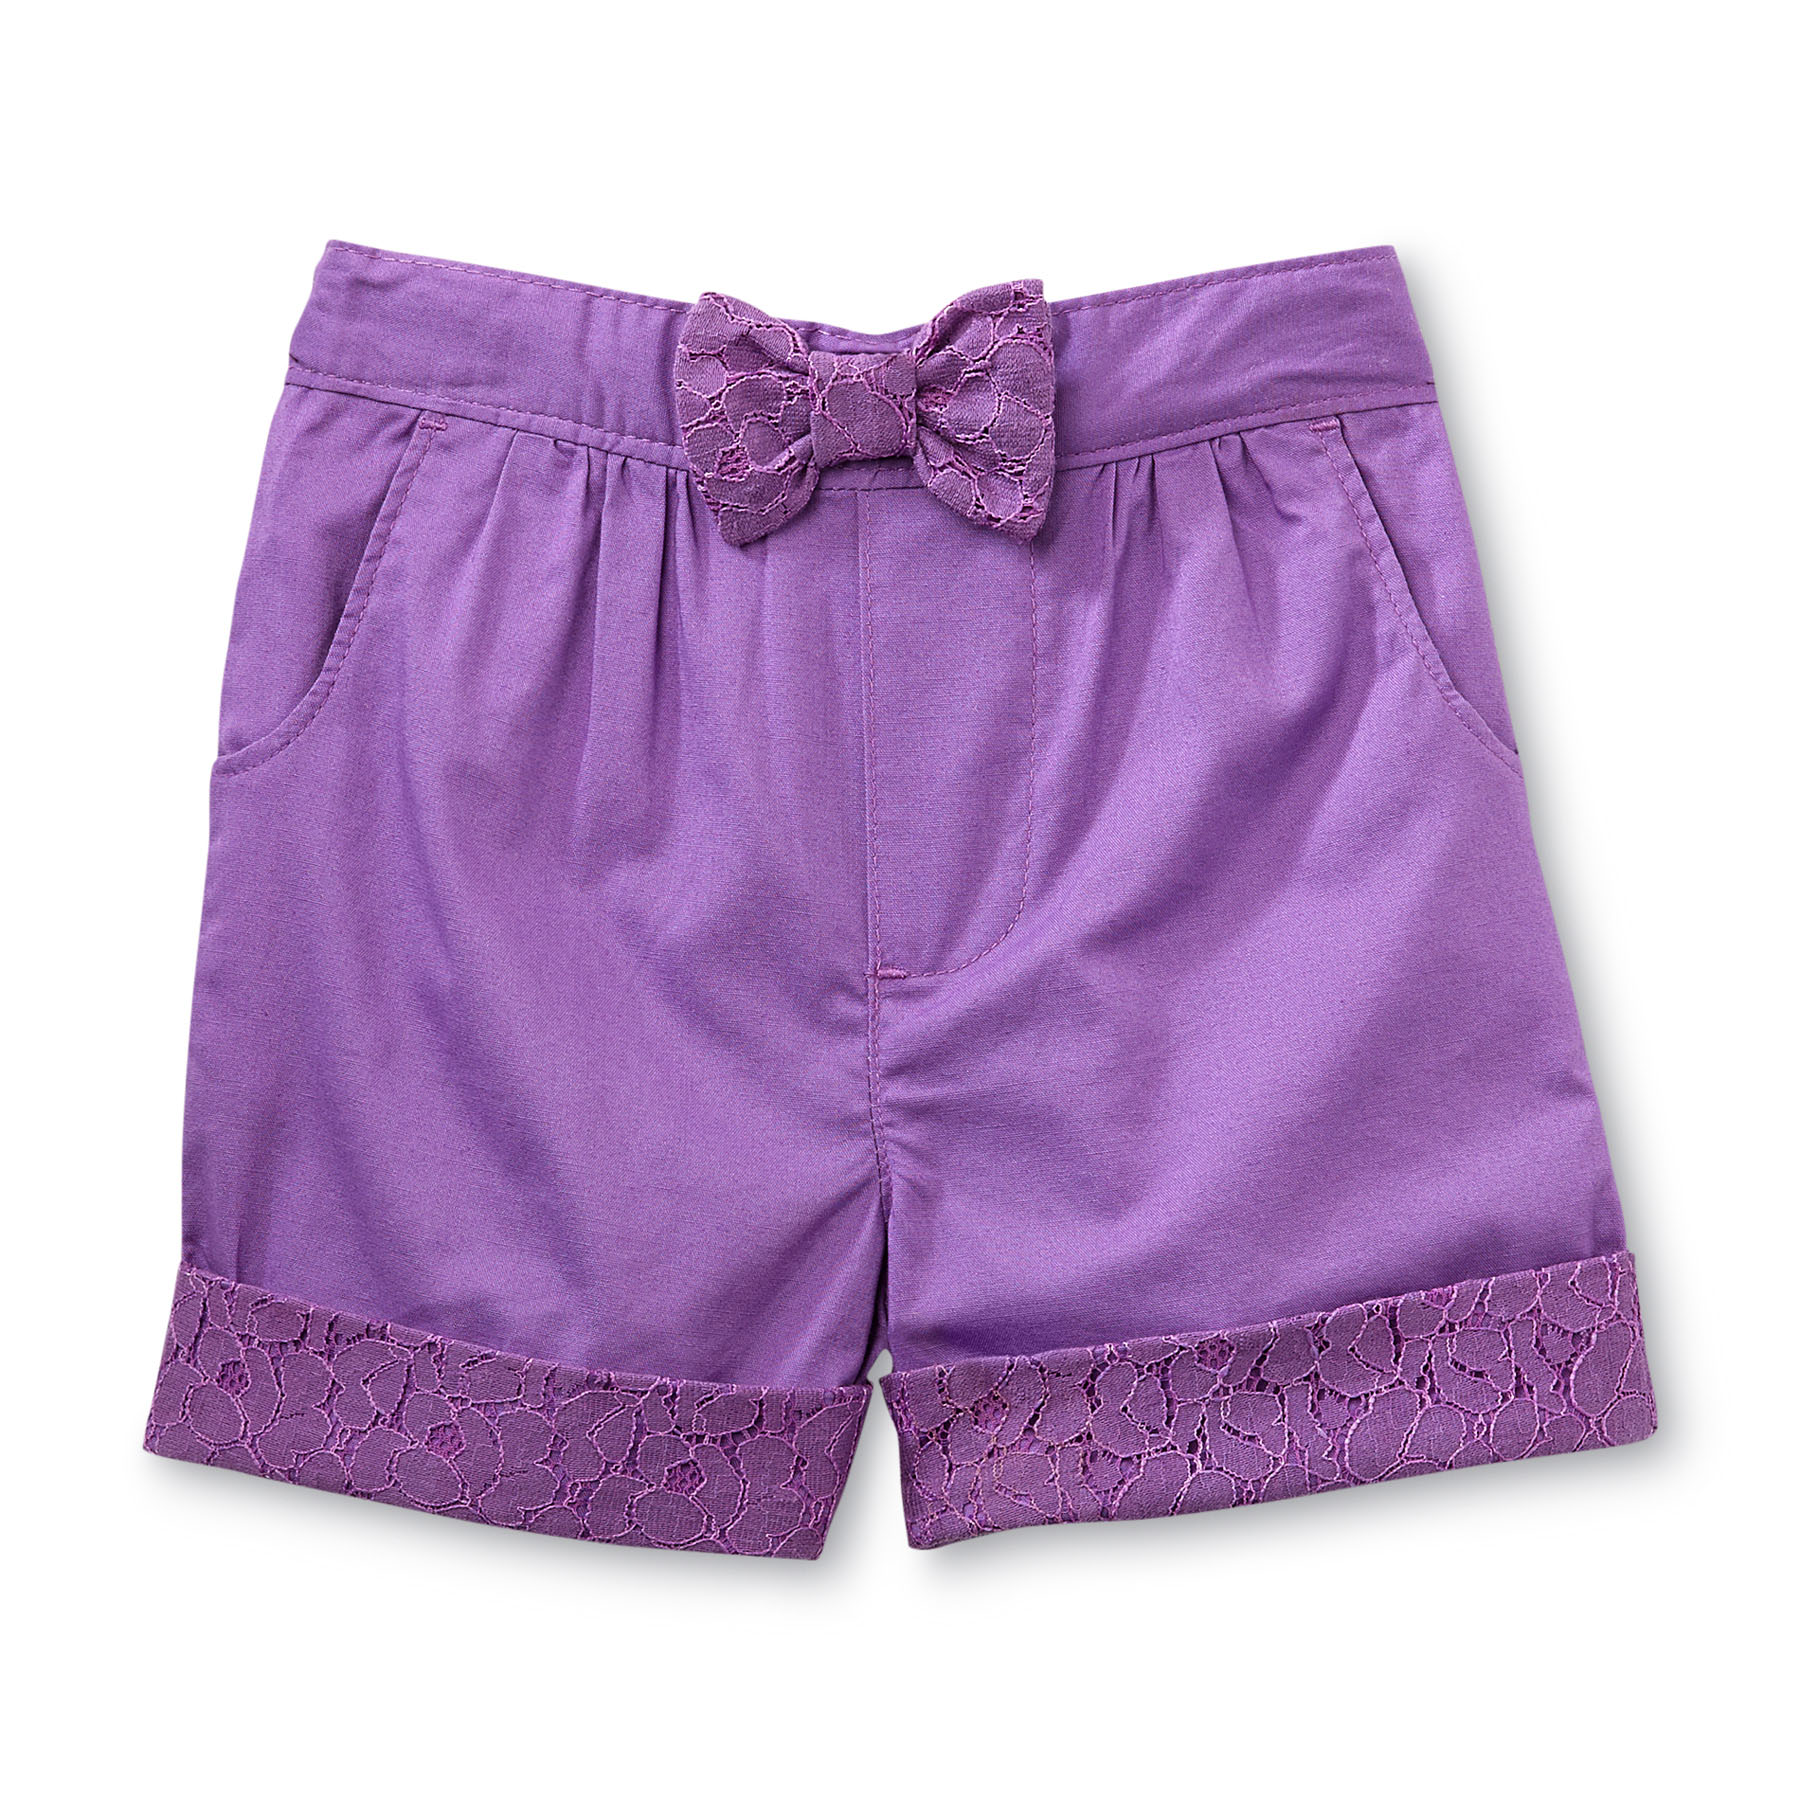 Toughskins Girl's Cuffed Poplin Shorts - Lace